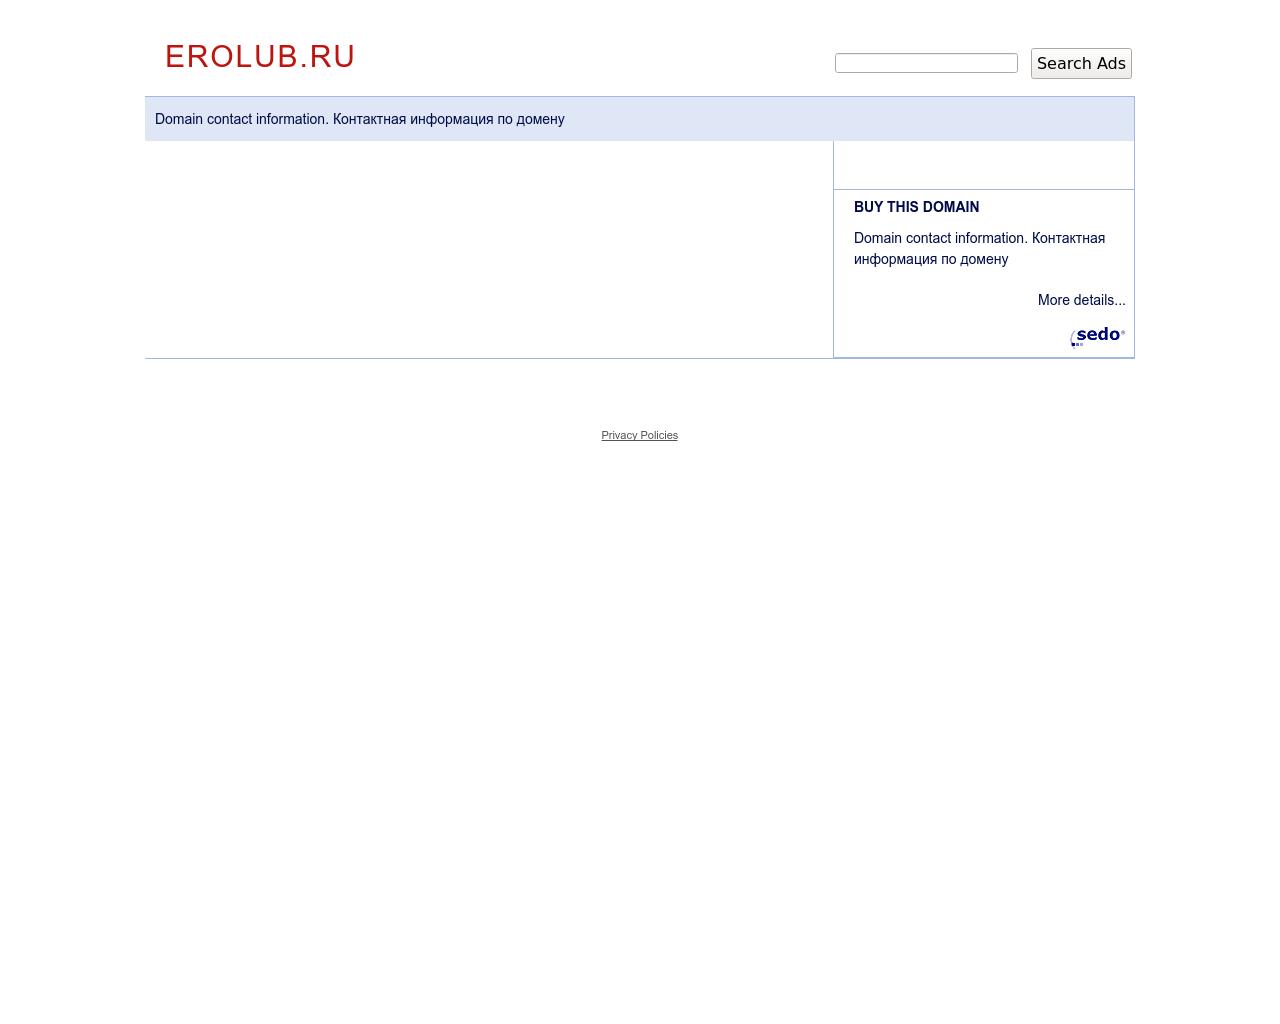 Изображение сайта erolub.ru в разрешении 1280x1024